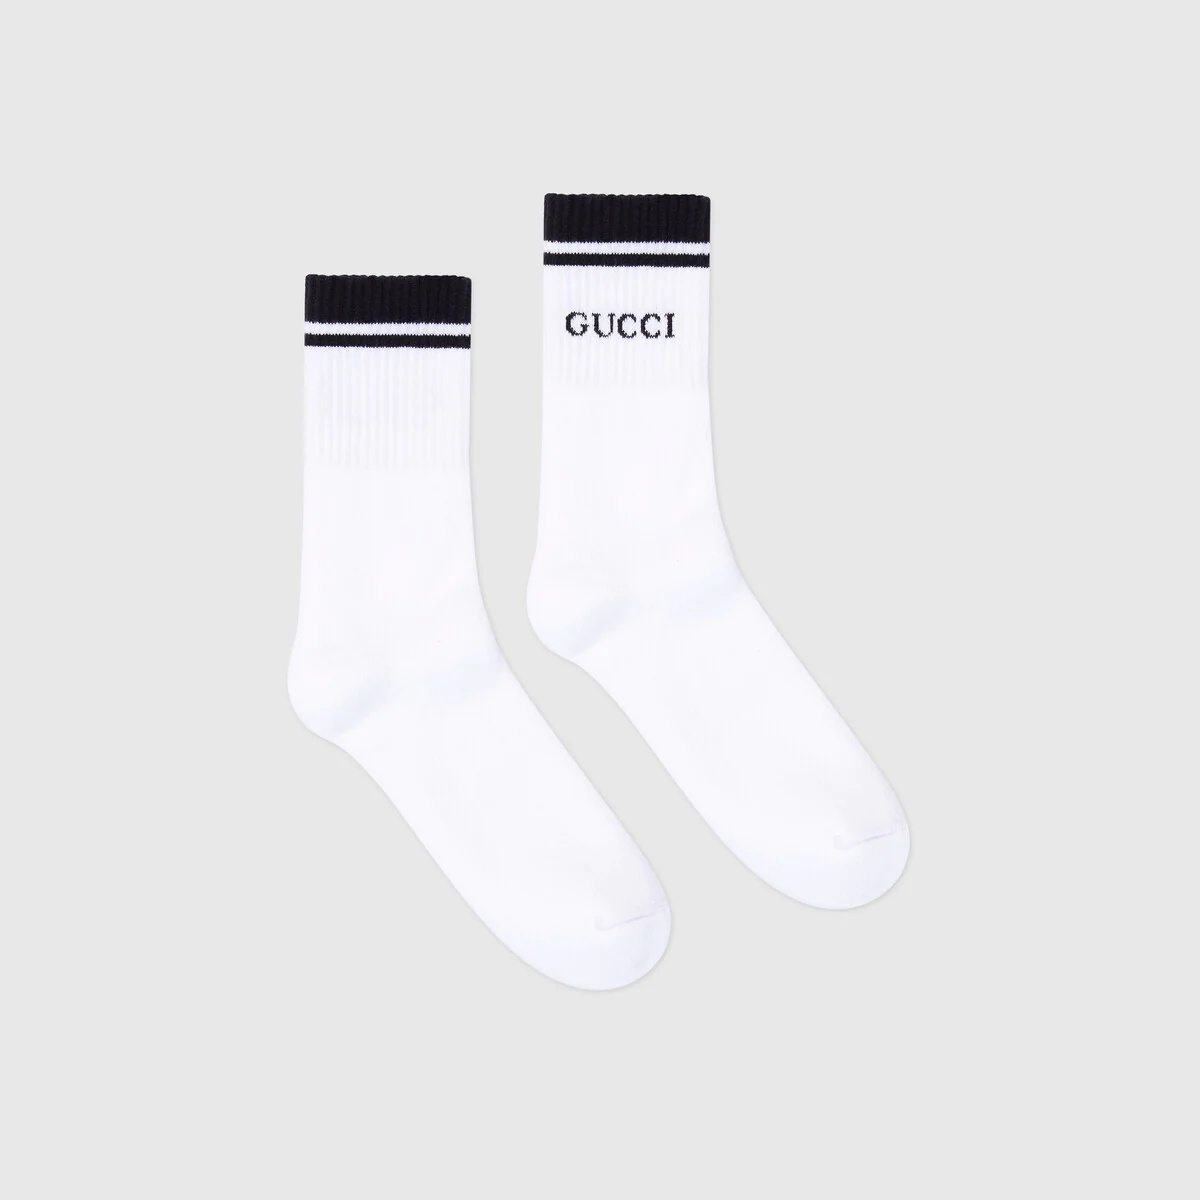 Cotton Gucci socks - 2